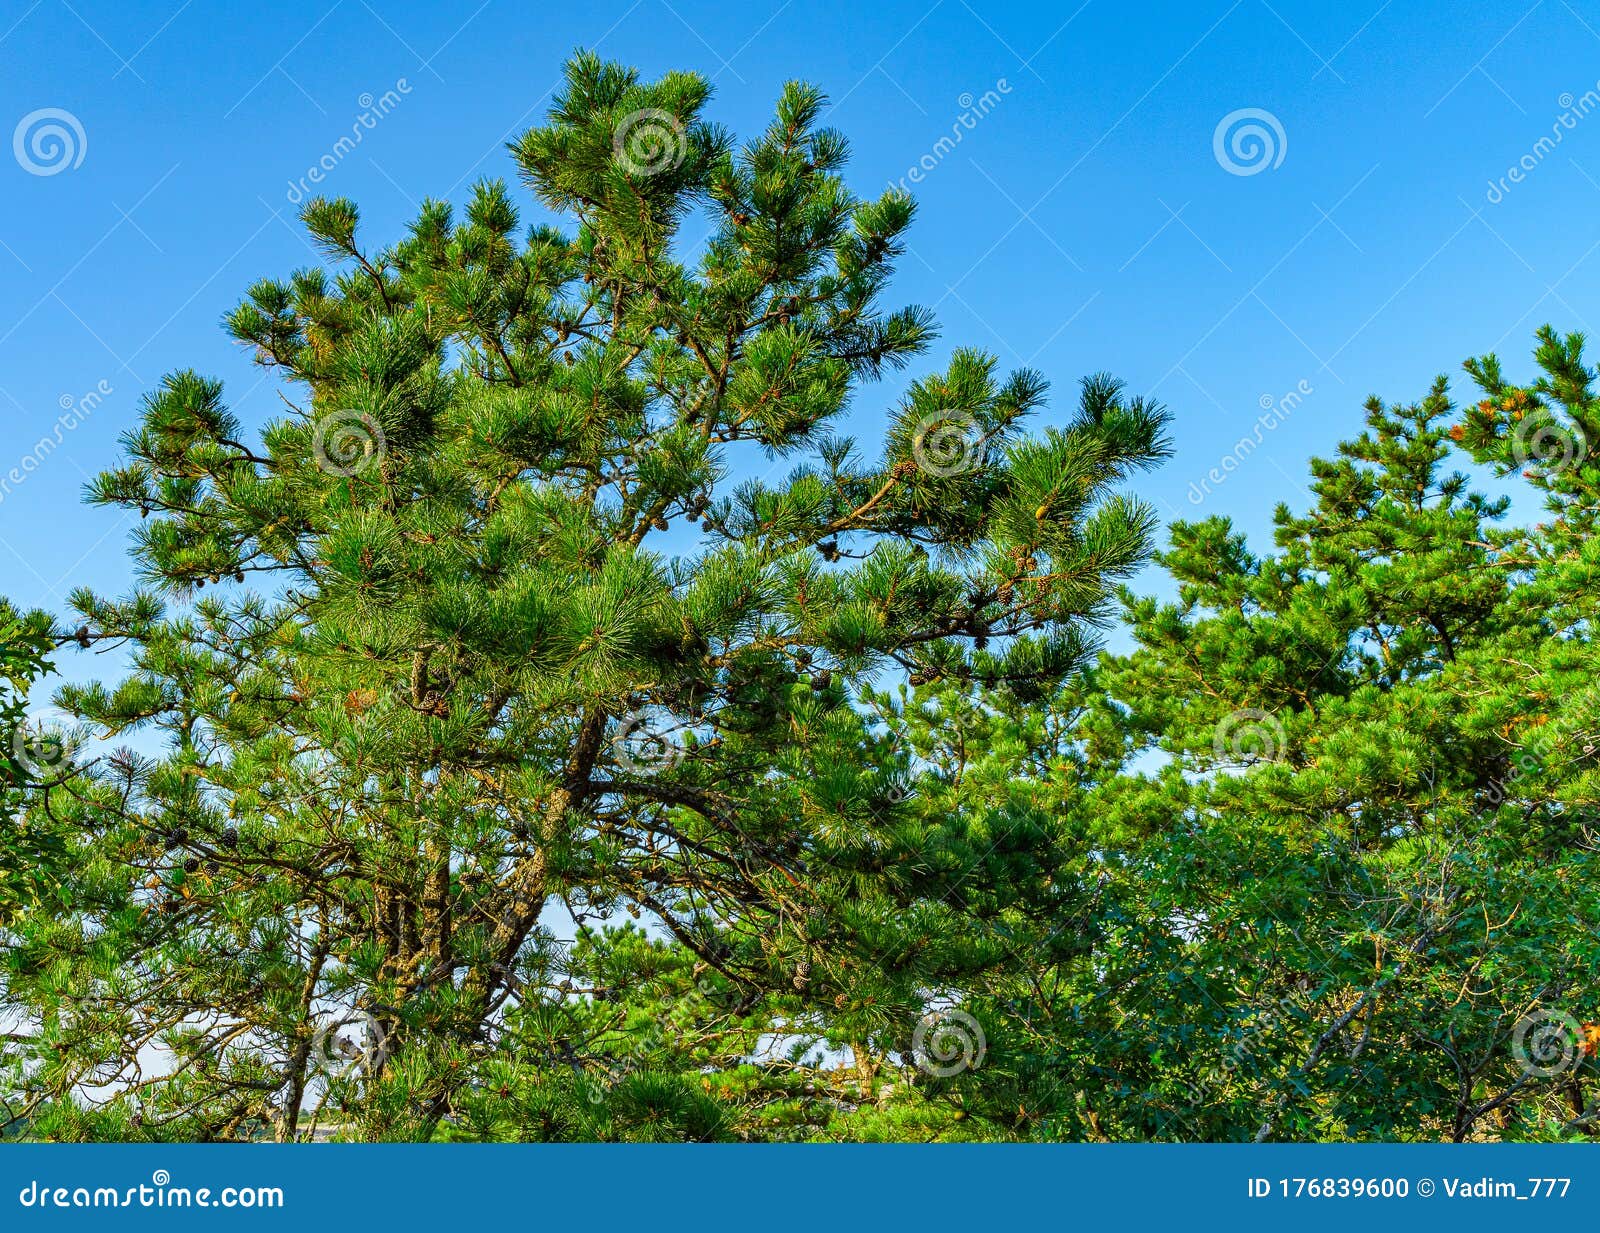 pine forest on dunes, ecoregion pine wasteland, cape cod massachusetts, us